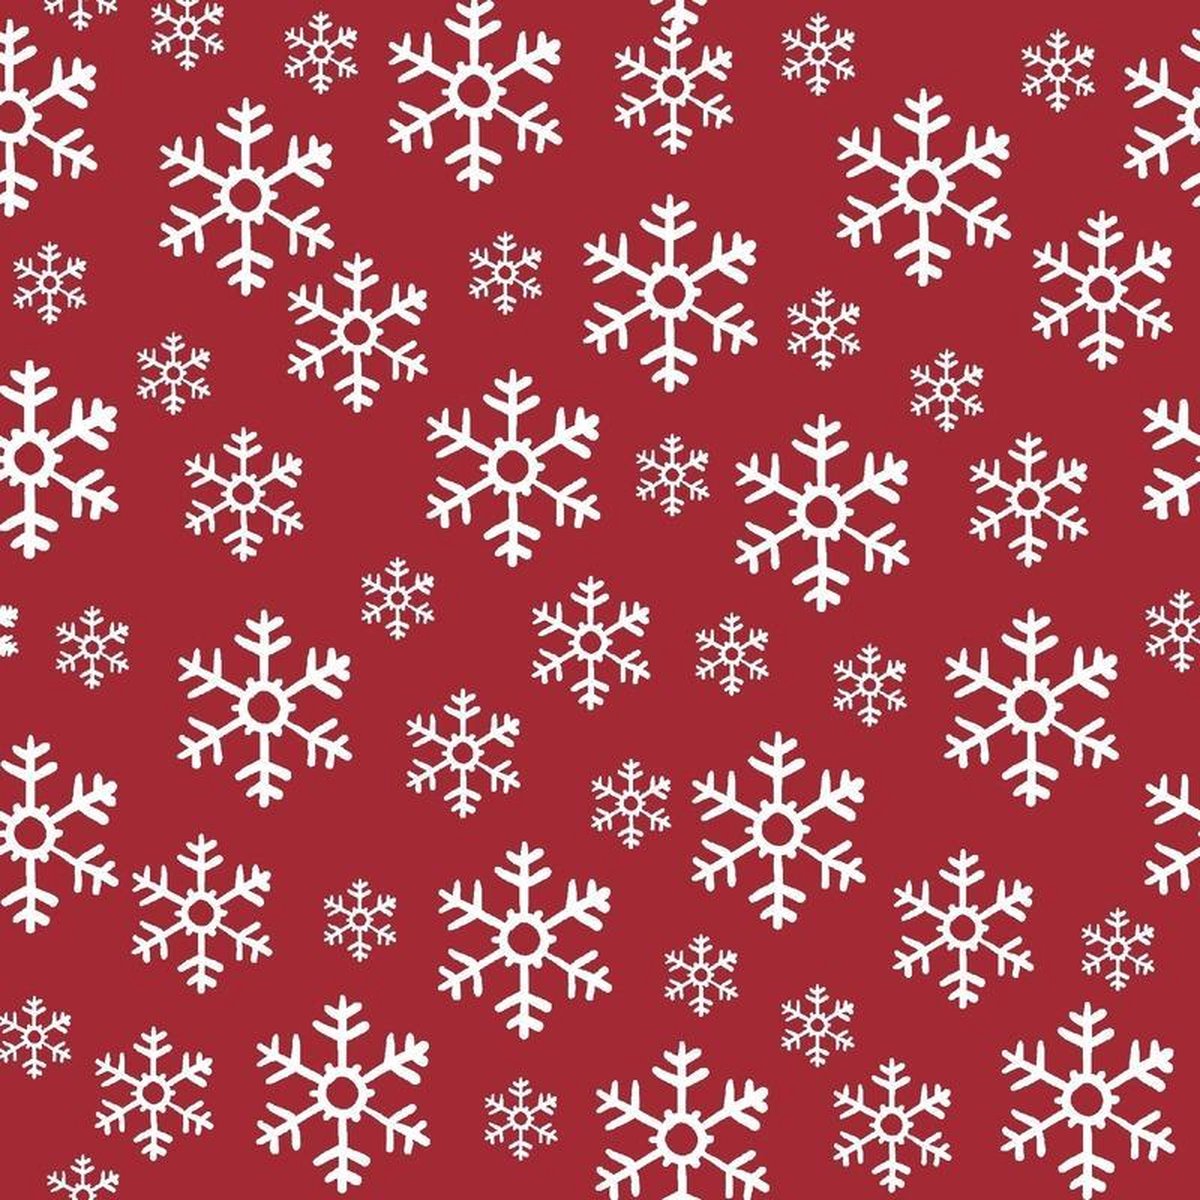 20x Kerst servetten rood/witte sneeuwvlokken 33 x 33 cm - Kerstdiner tafeldecoratie versieringen - duni